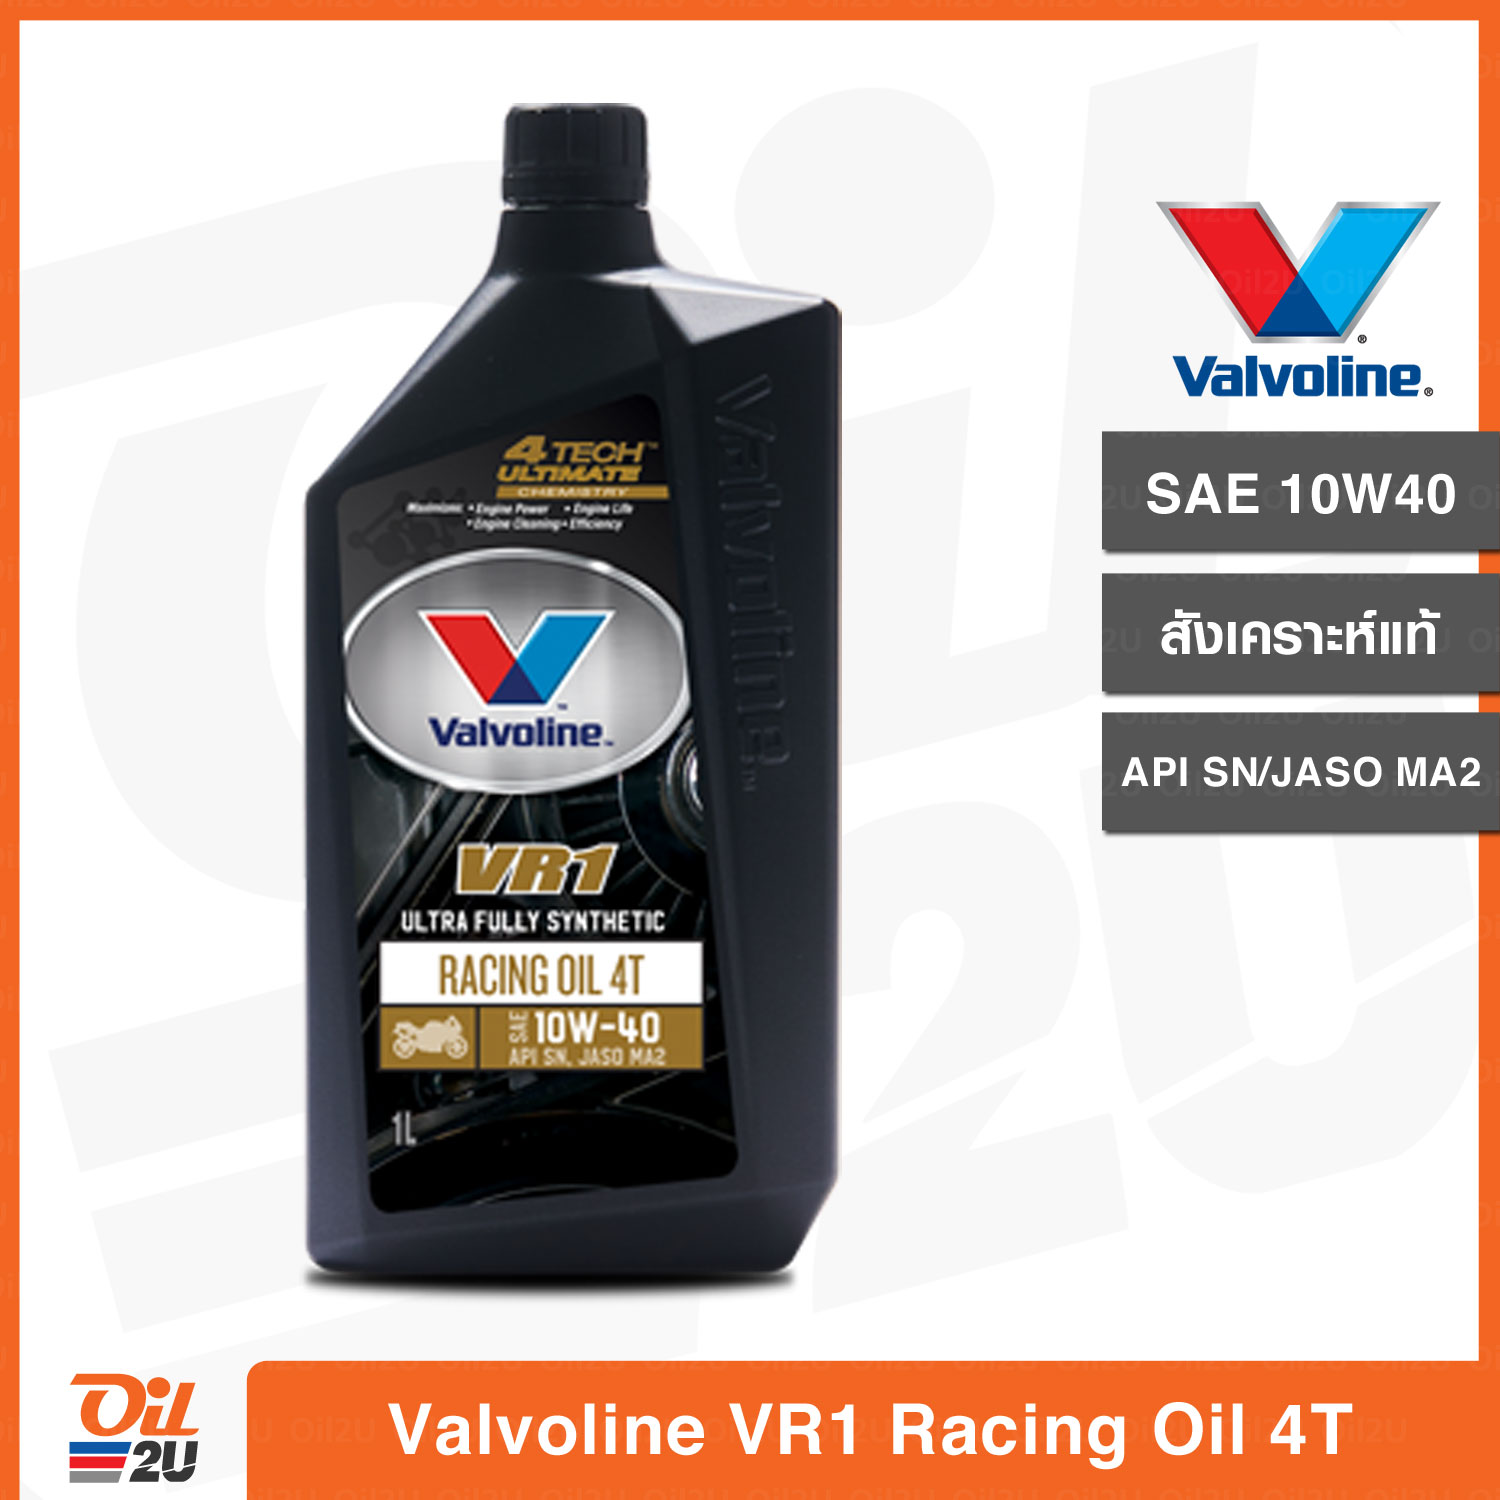 น้ำมันเครื่อง Valvoline VR1 Racing Oil 4T SAE 10W40 วาวโวลีน วีอาร์วัน เรสซิ่ง สังเคราะห์แท้ ปริมาณ 1 ลิตร | Oil2U